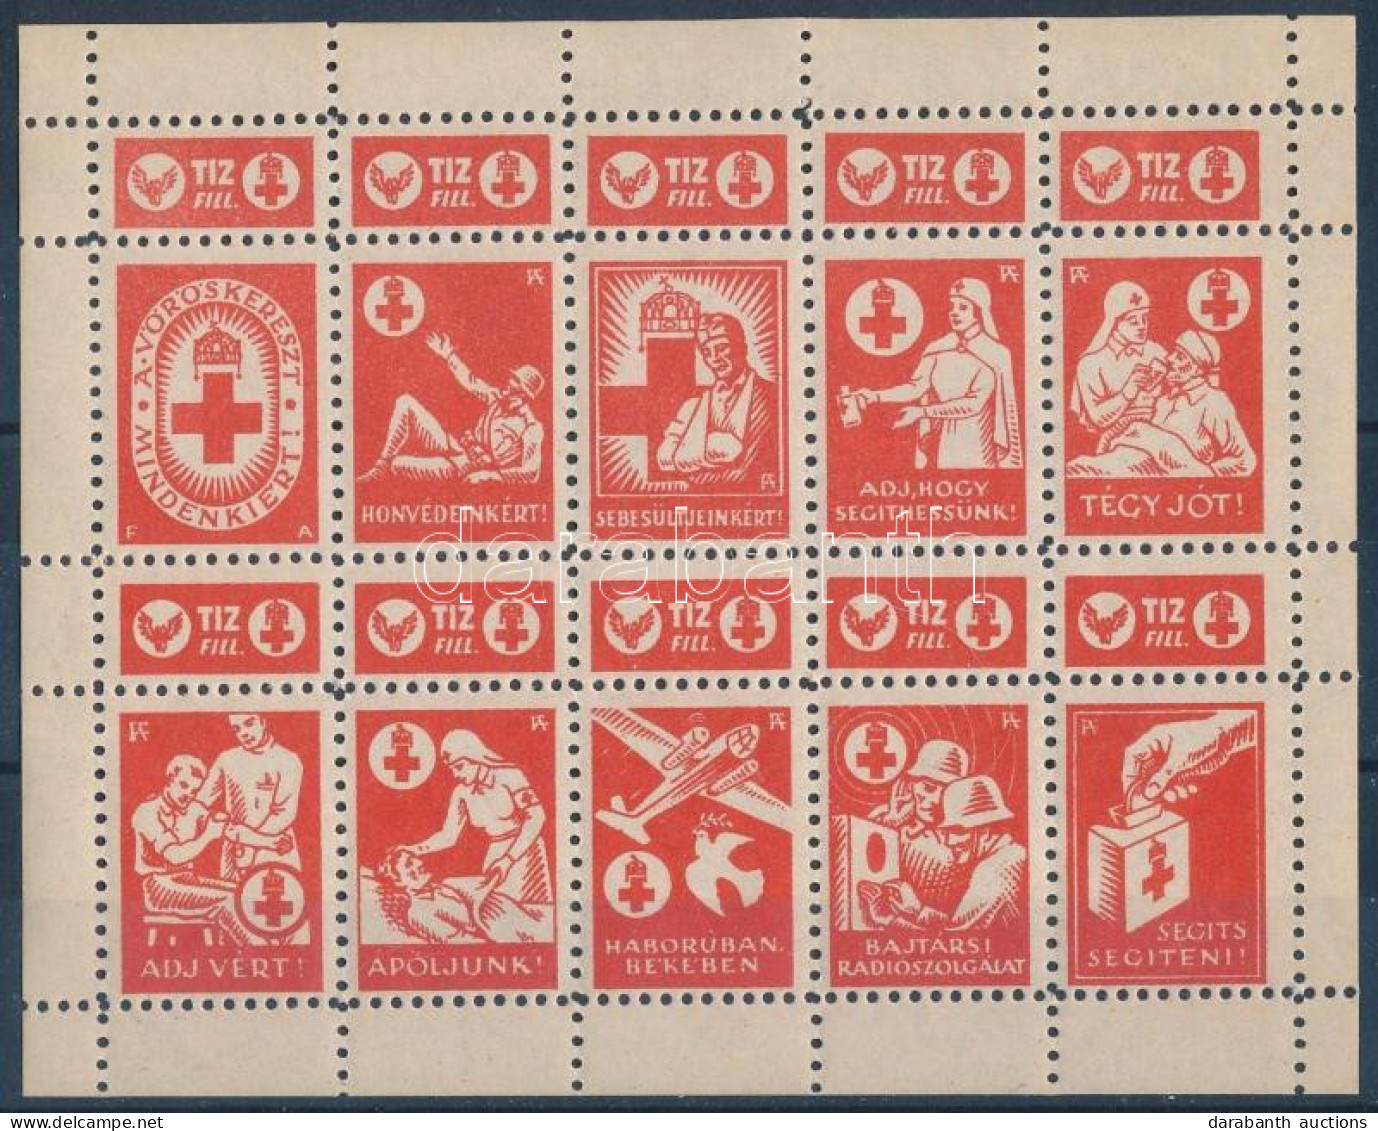 ~1942 Vöröskereszt 10f Adománybélyeg 10-es Kisívben / Hungarian Charity Stamp In Mini Sheet Of 10 - Non Classés